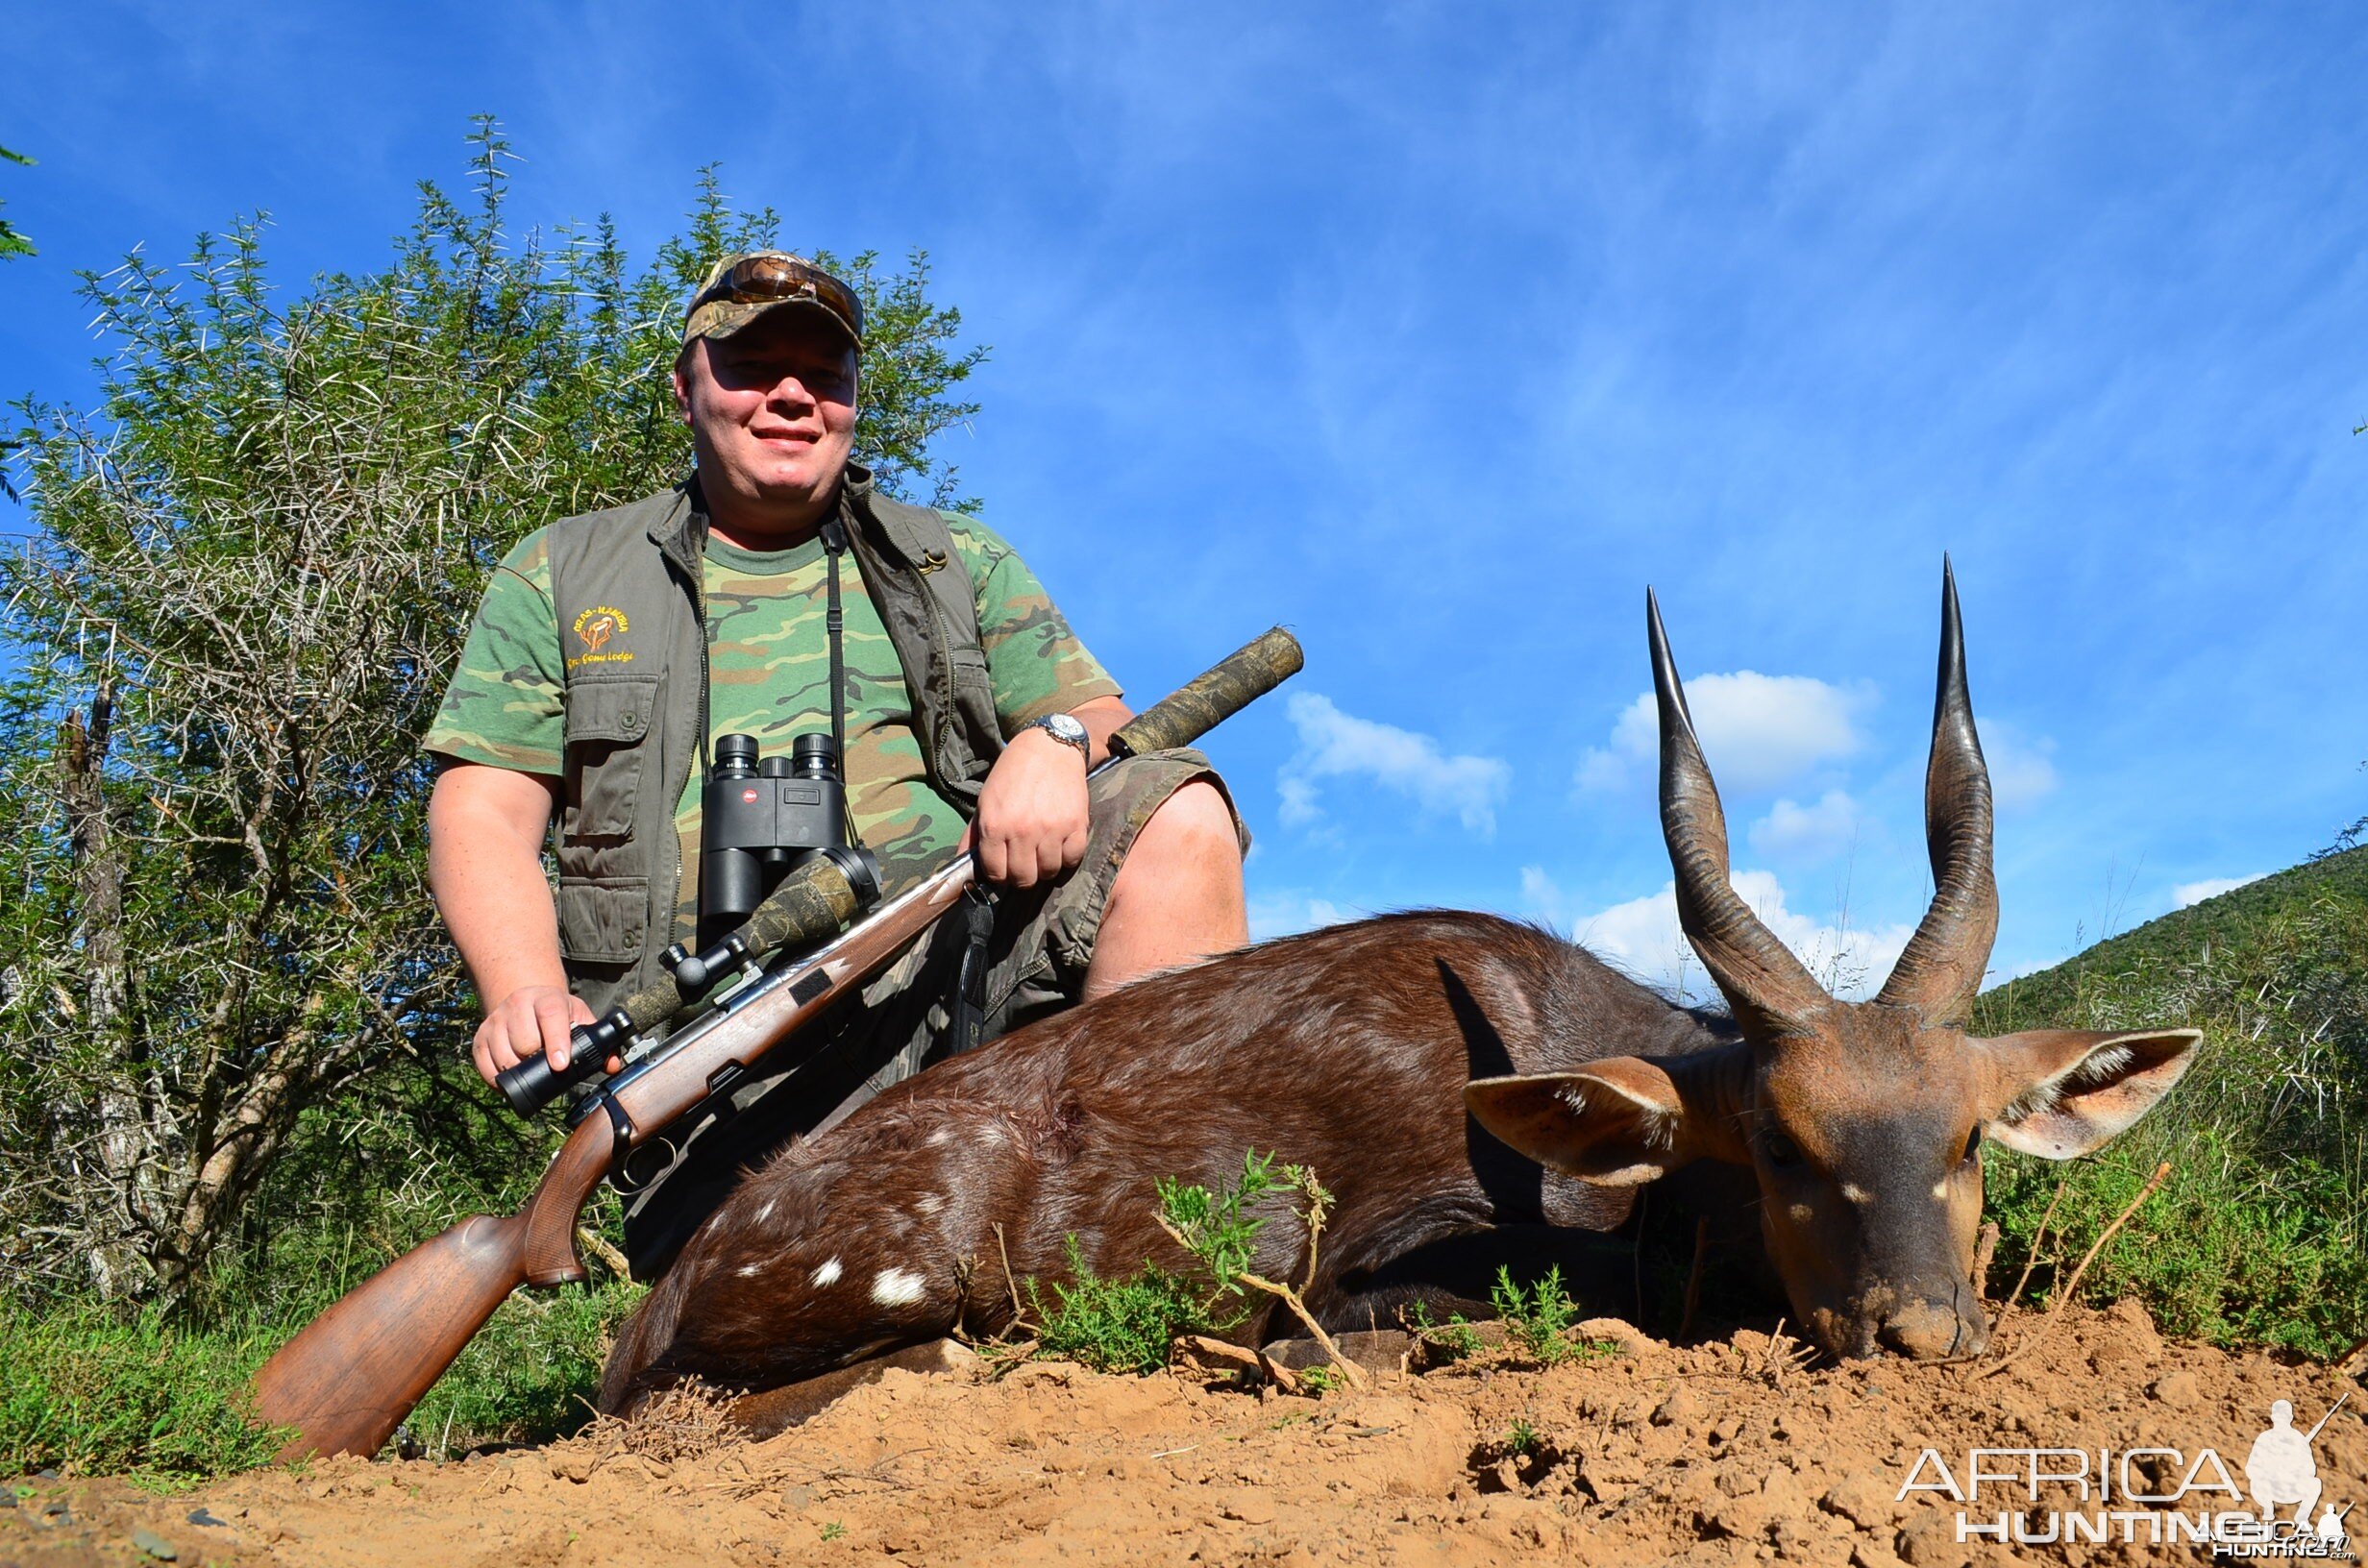 Bushbuck KMG Hunting Safaris